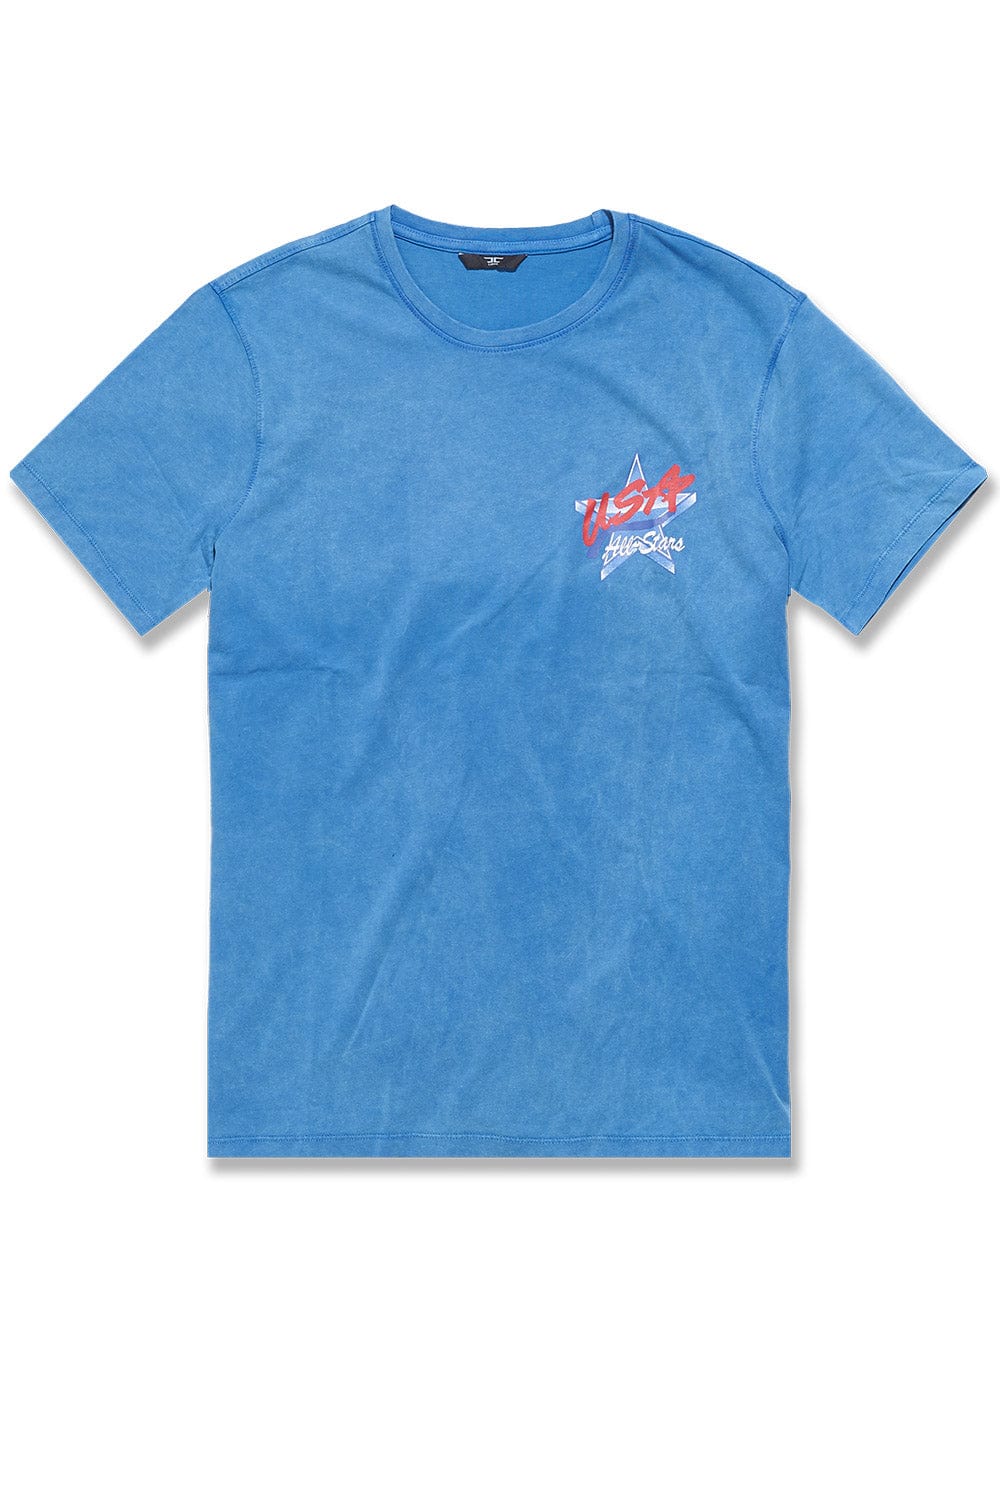 Jordan Craig Dream Team T-Shirt (Retro Blue) S / Retro Blue